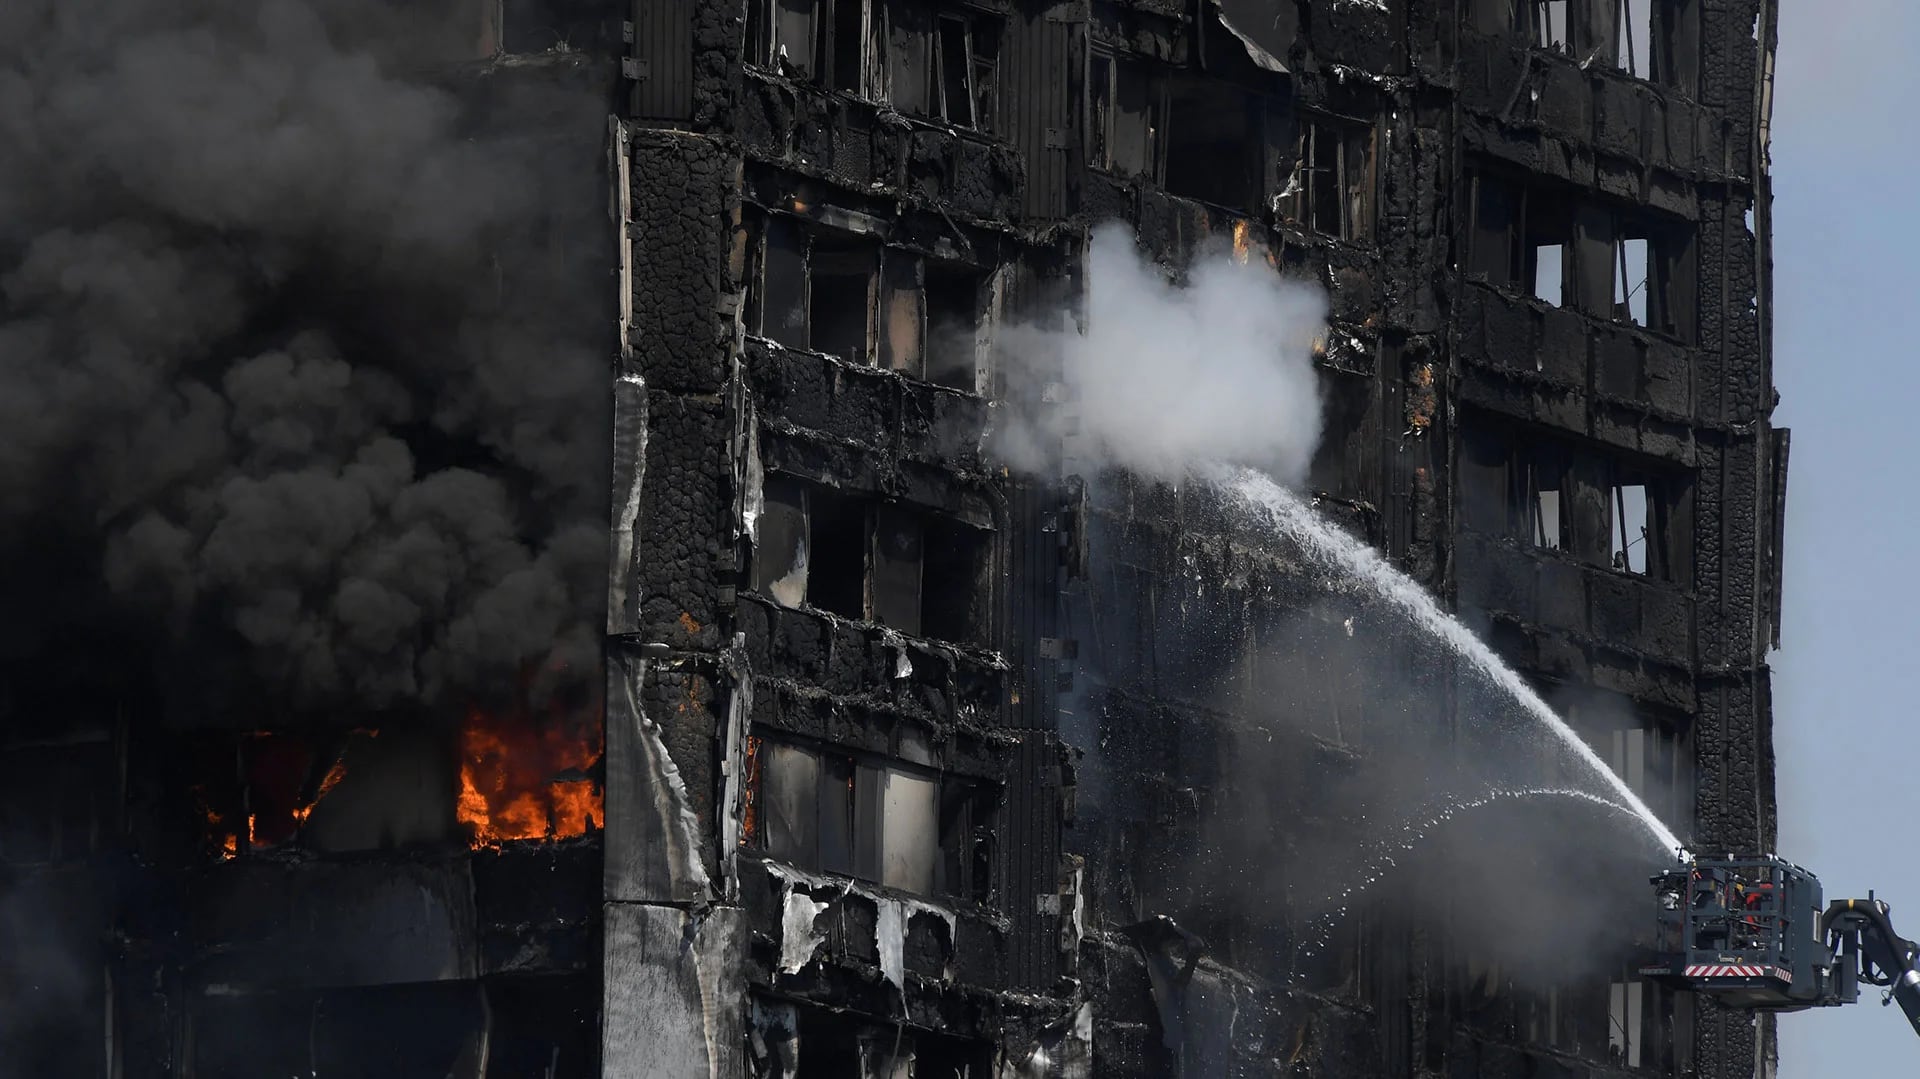 Tras horas de continuos incendios, los bomberos lograron controlarlo,pero focos de llamas seguían encendidos esta mañana en Londres (Reuters)